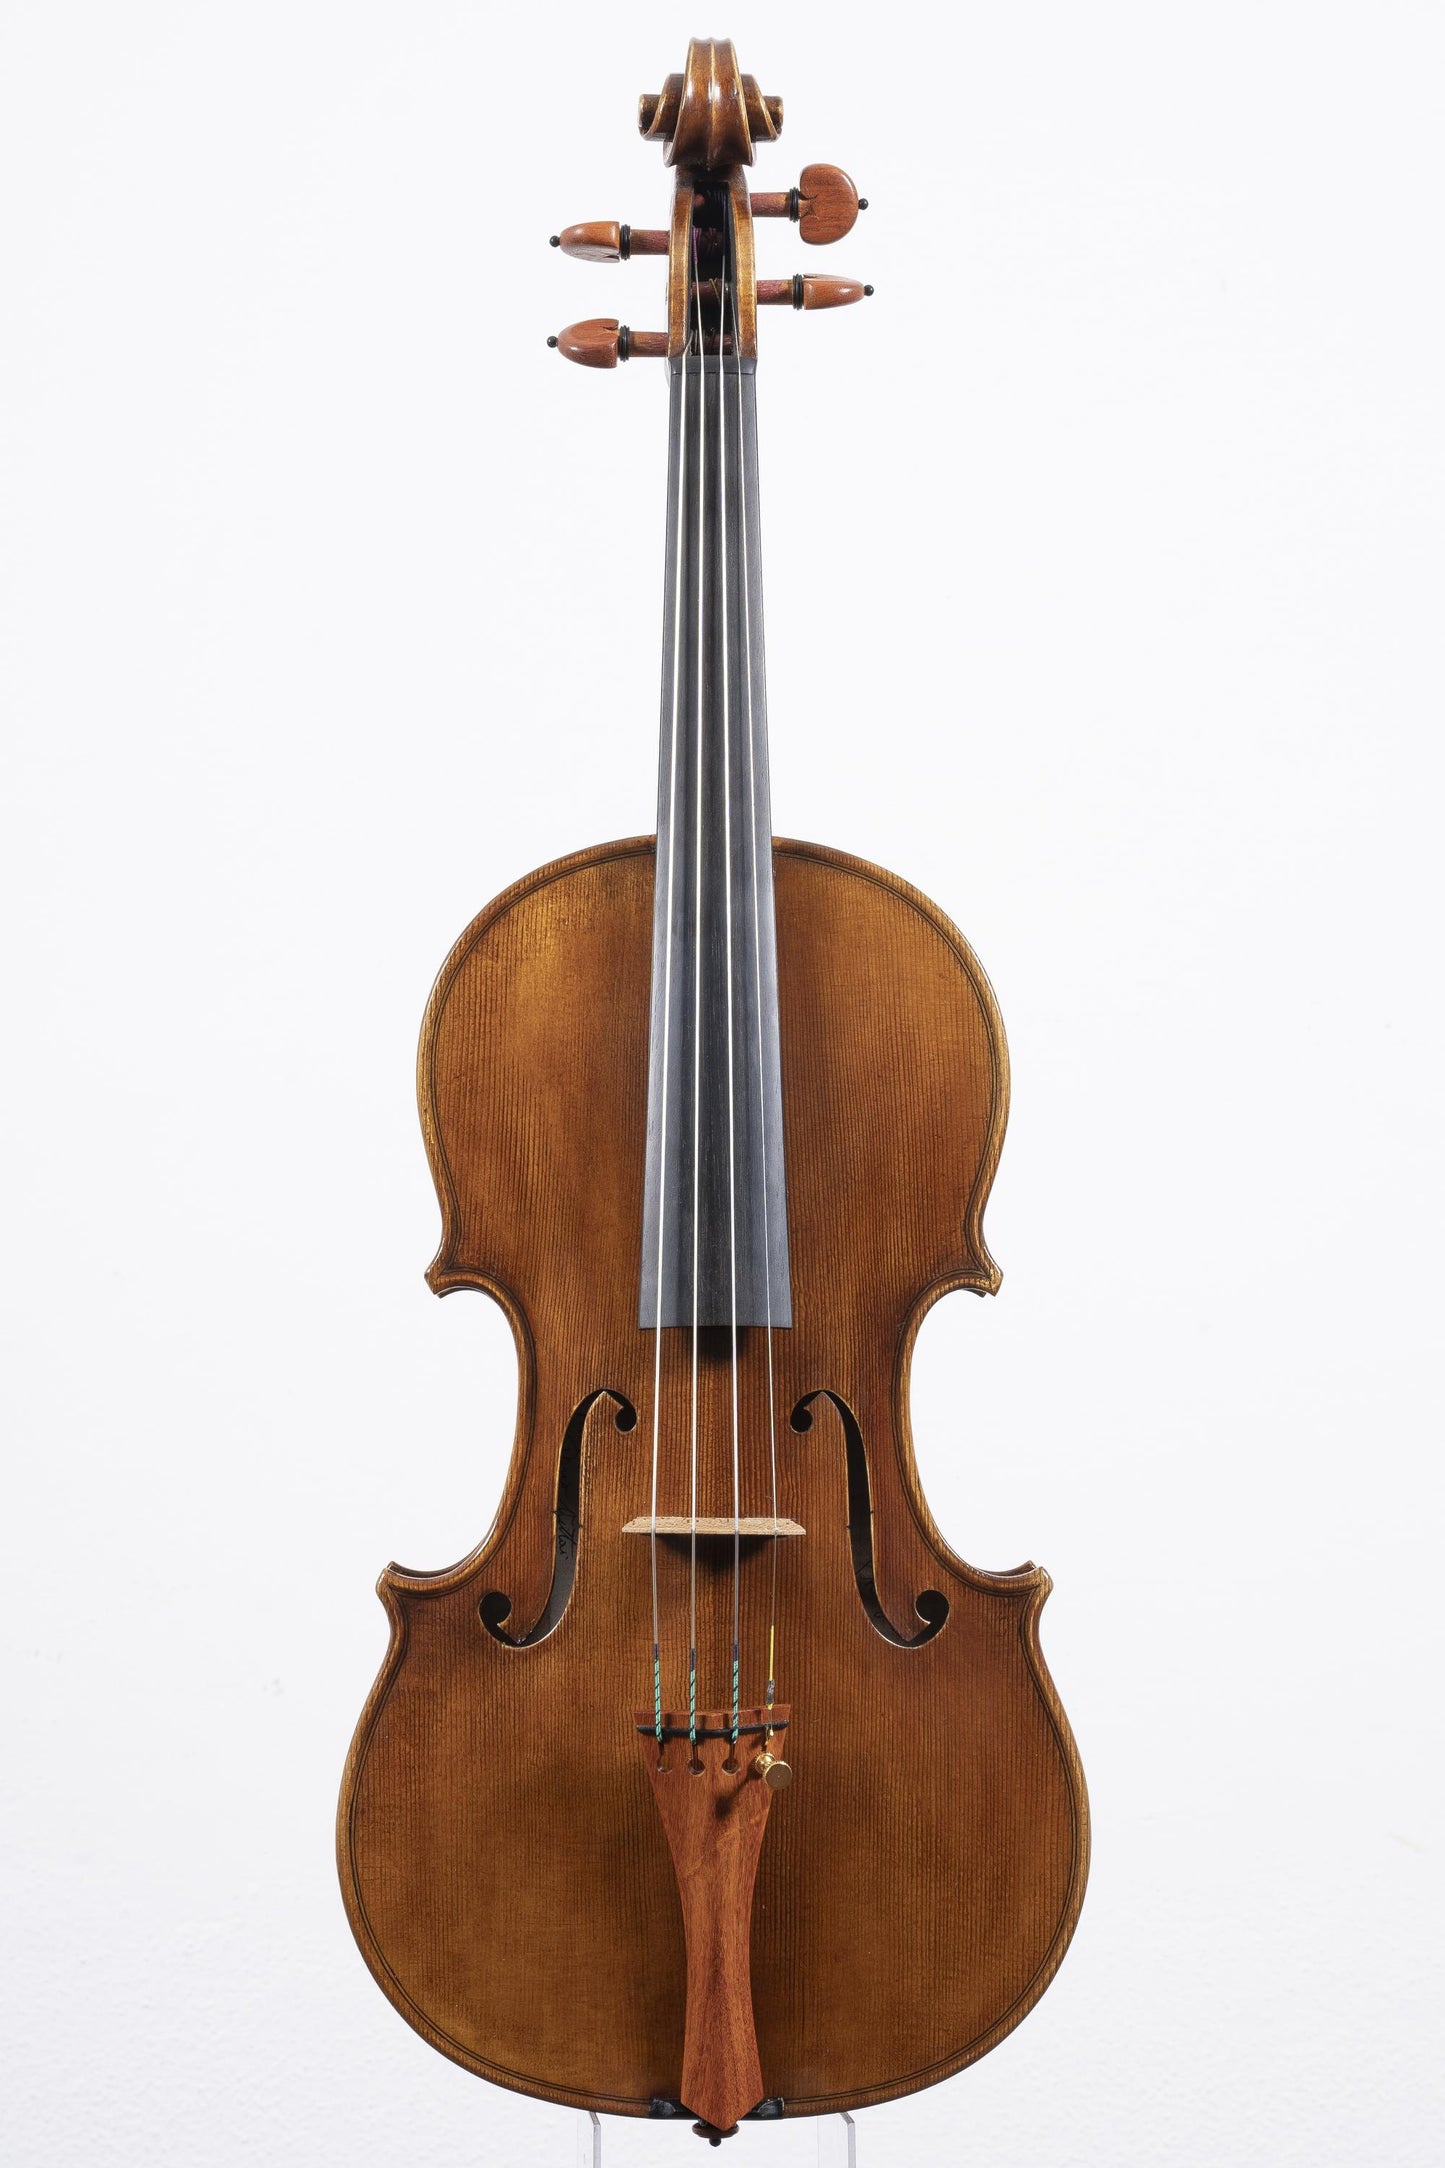 Vettori Dario Violin Mod. Antonio Stradivari "Phlegon" 2019